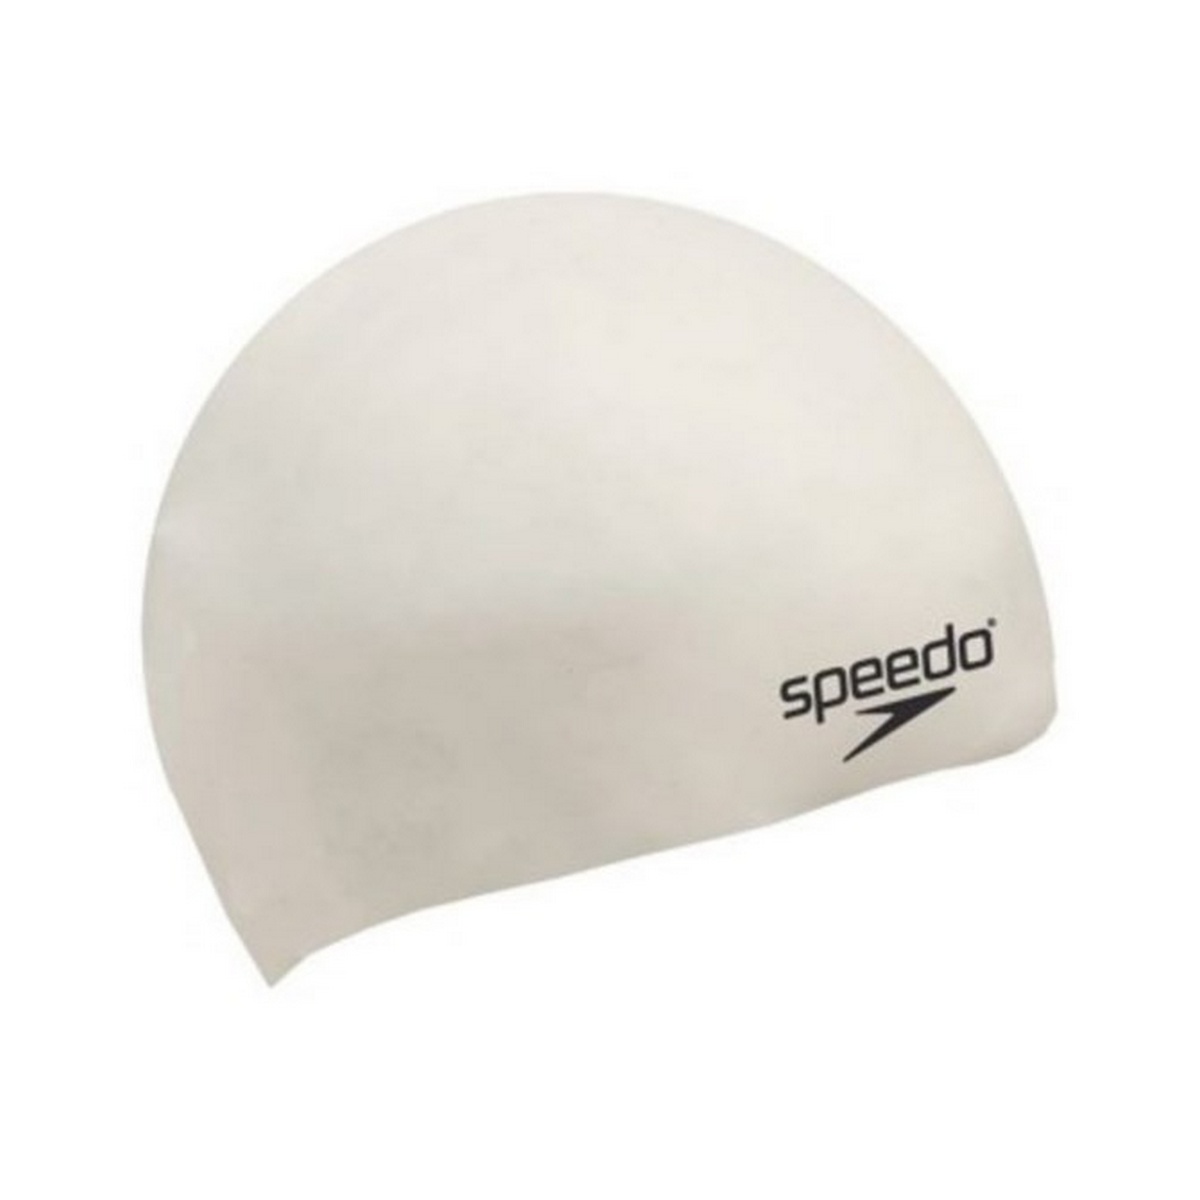 Speedo Flat Silicone Cap 